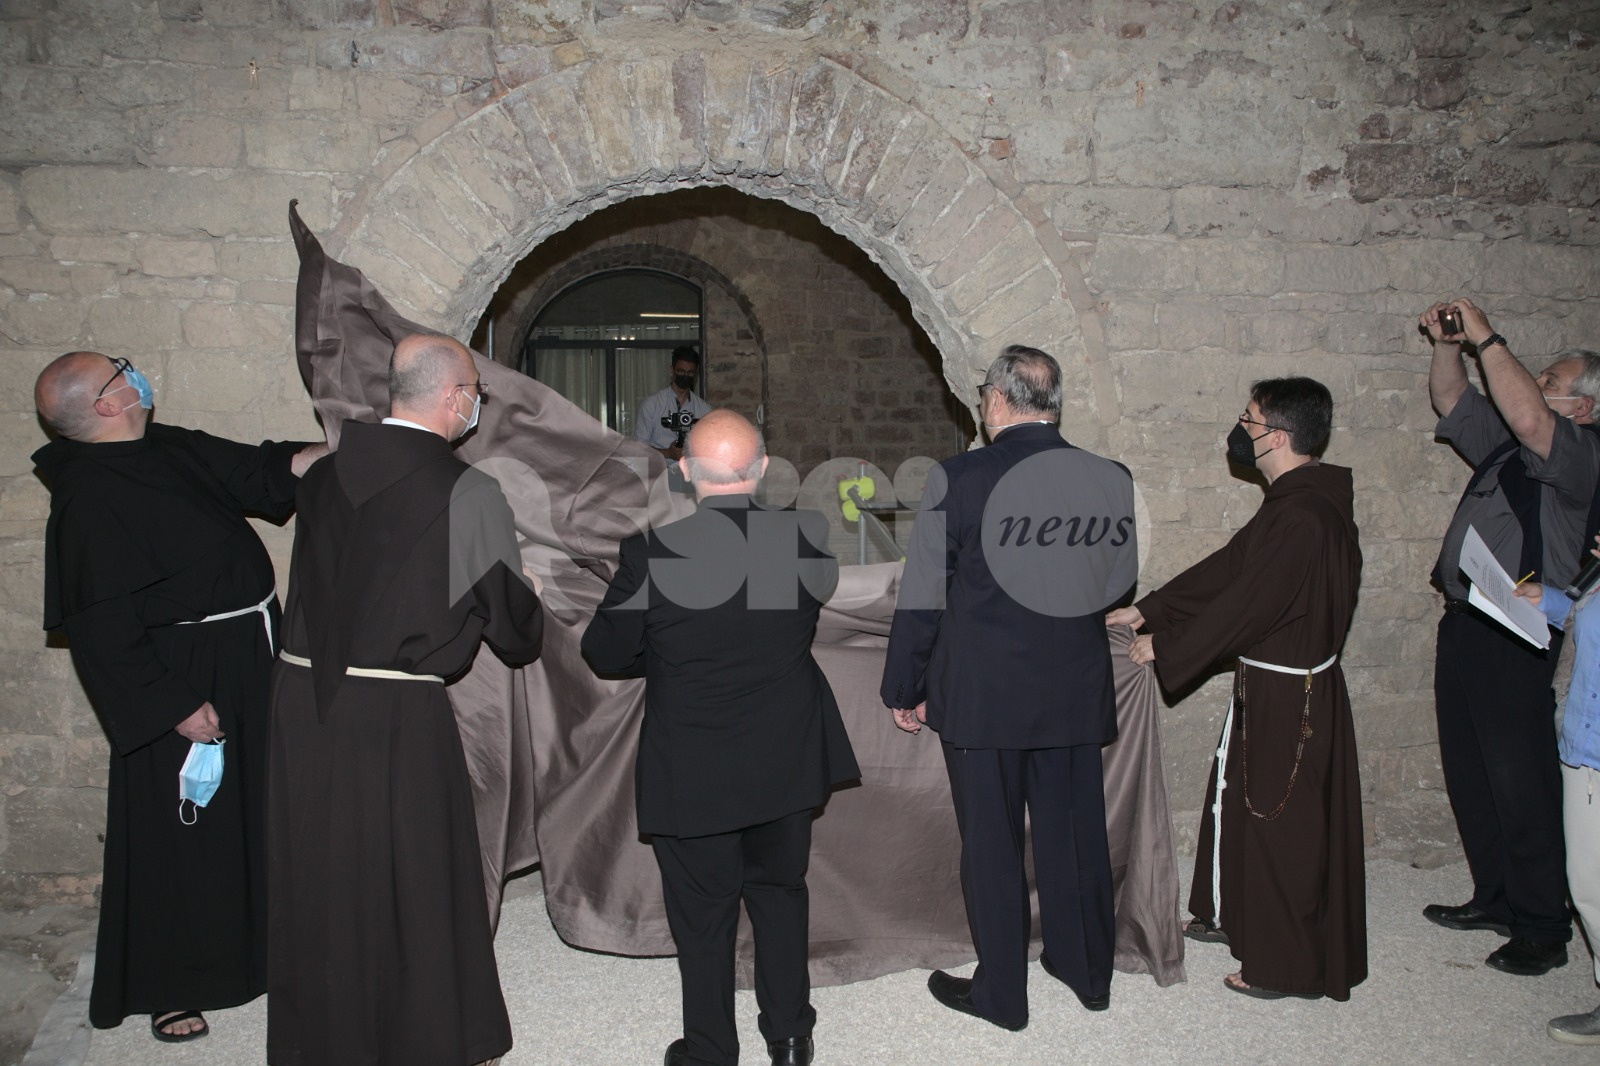 Vescovado di Assisi, riaperta l'antica porta. Papa Francesco: "Vi sono vicino spiritualmente e vi benedico" (foto e video)